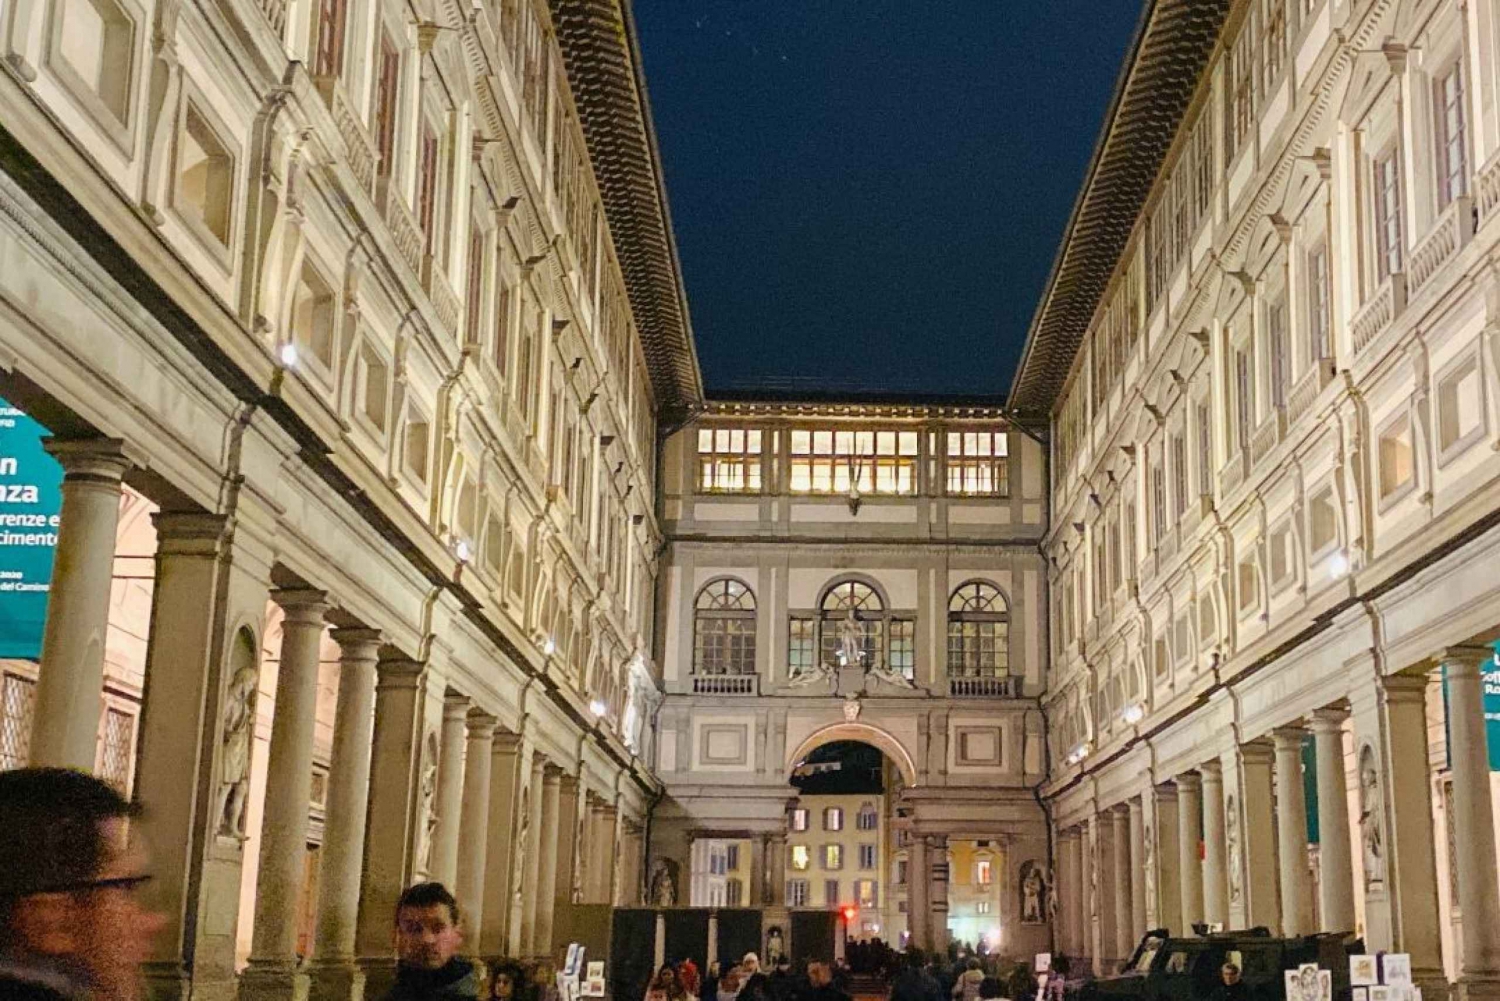 Toegangsbewijzen voor Uffizi Galerij in Florence